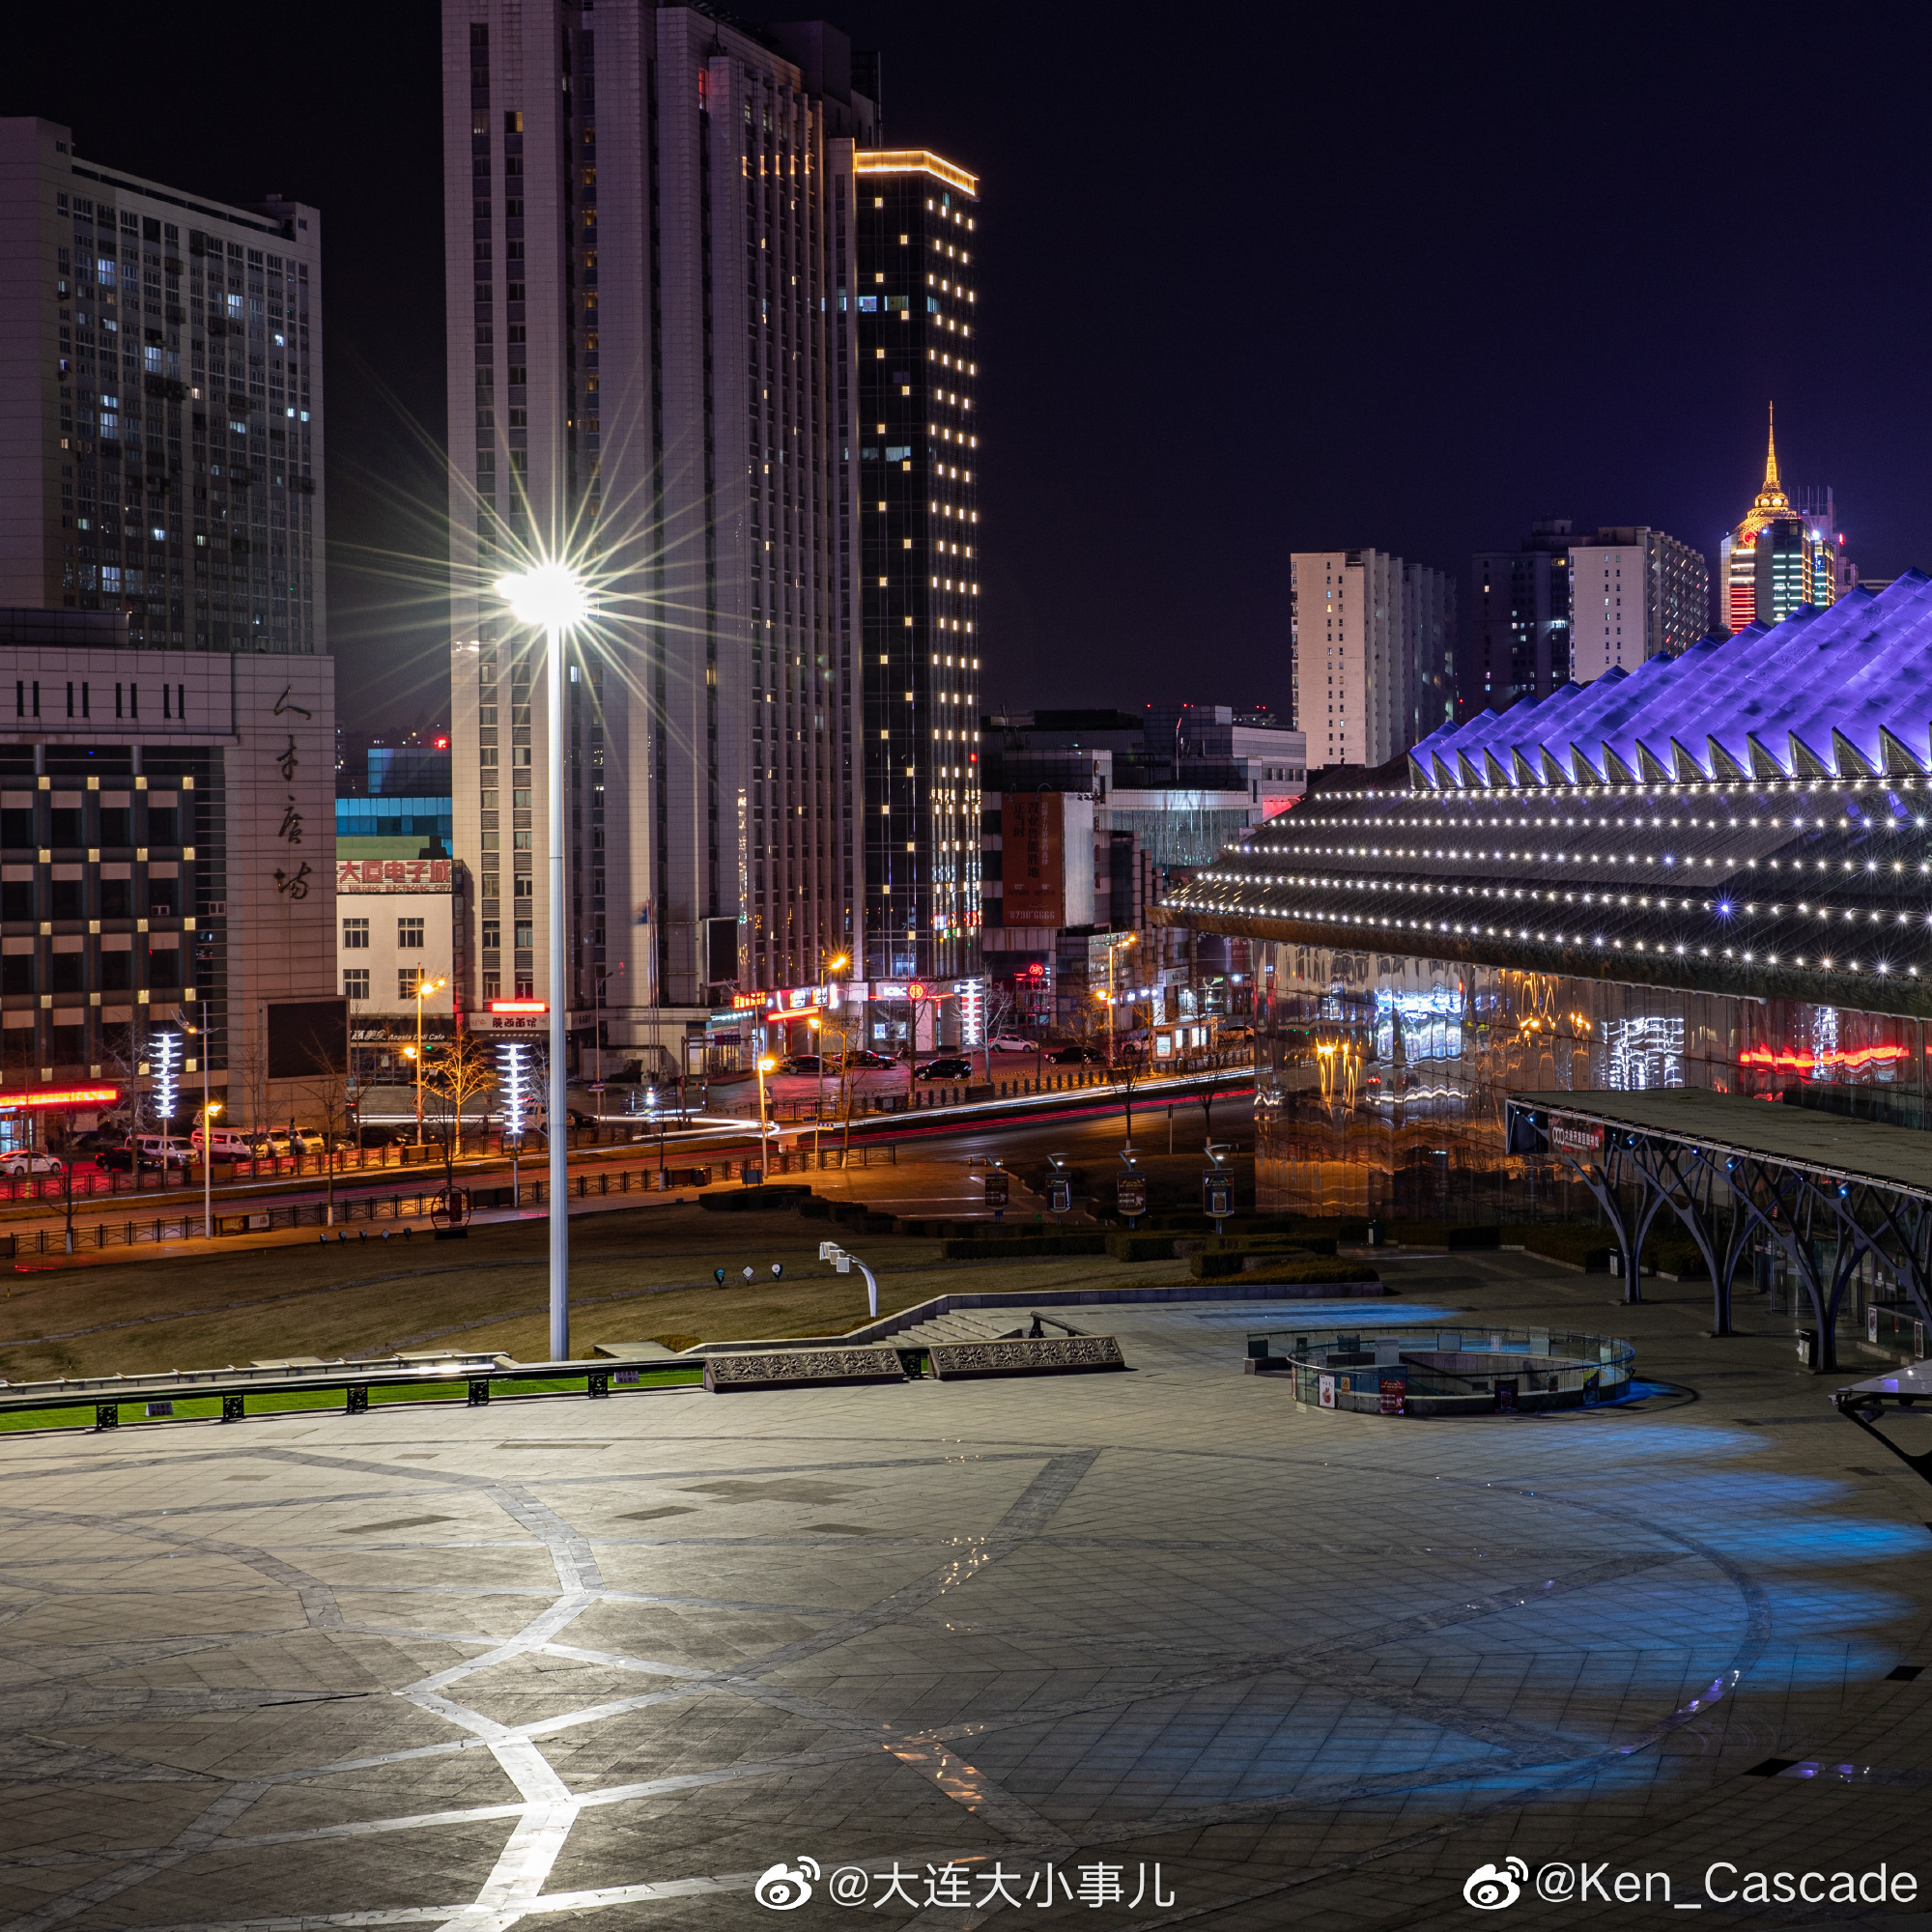 大连开发区夜景金马路开发区文化广场@Ken_Cascade 拍摄